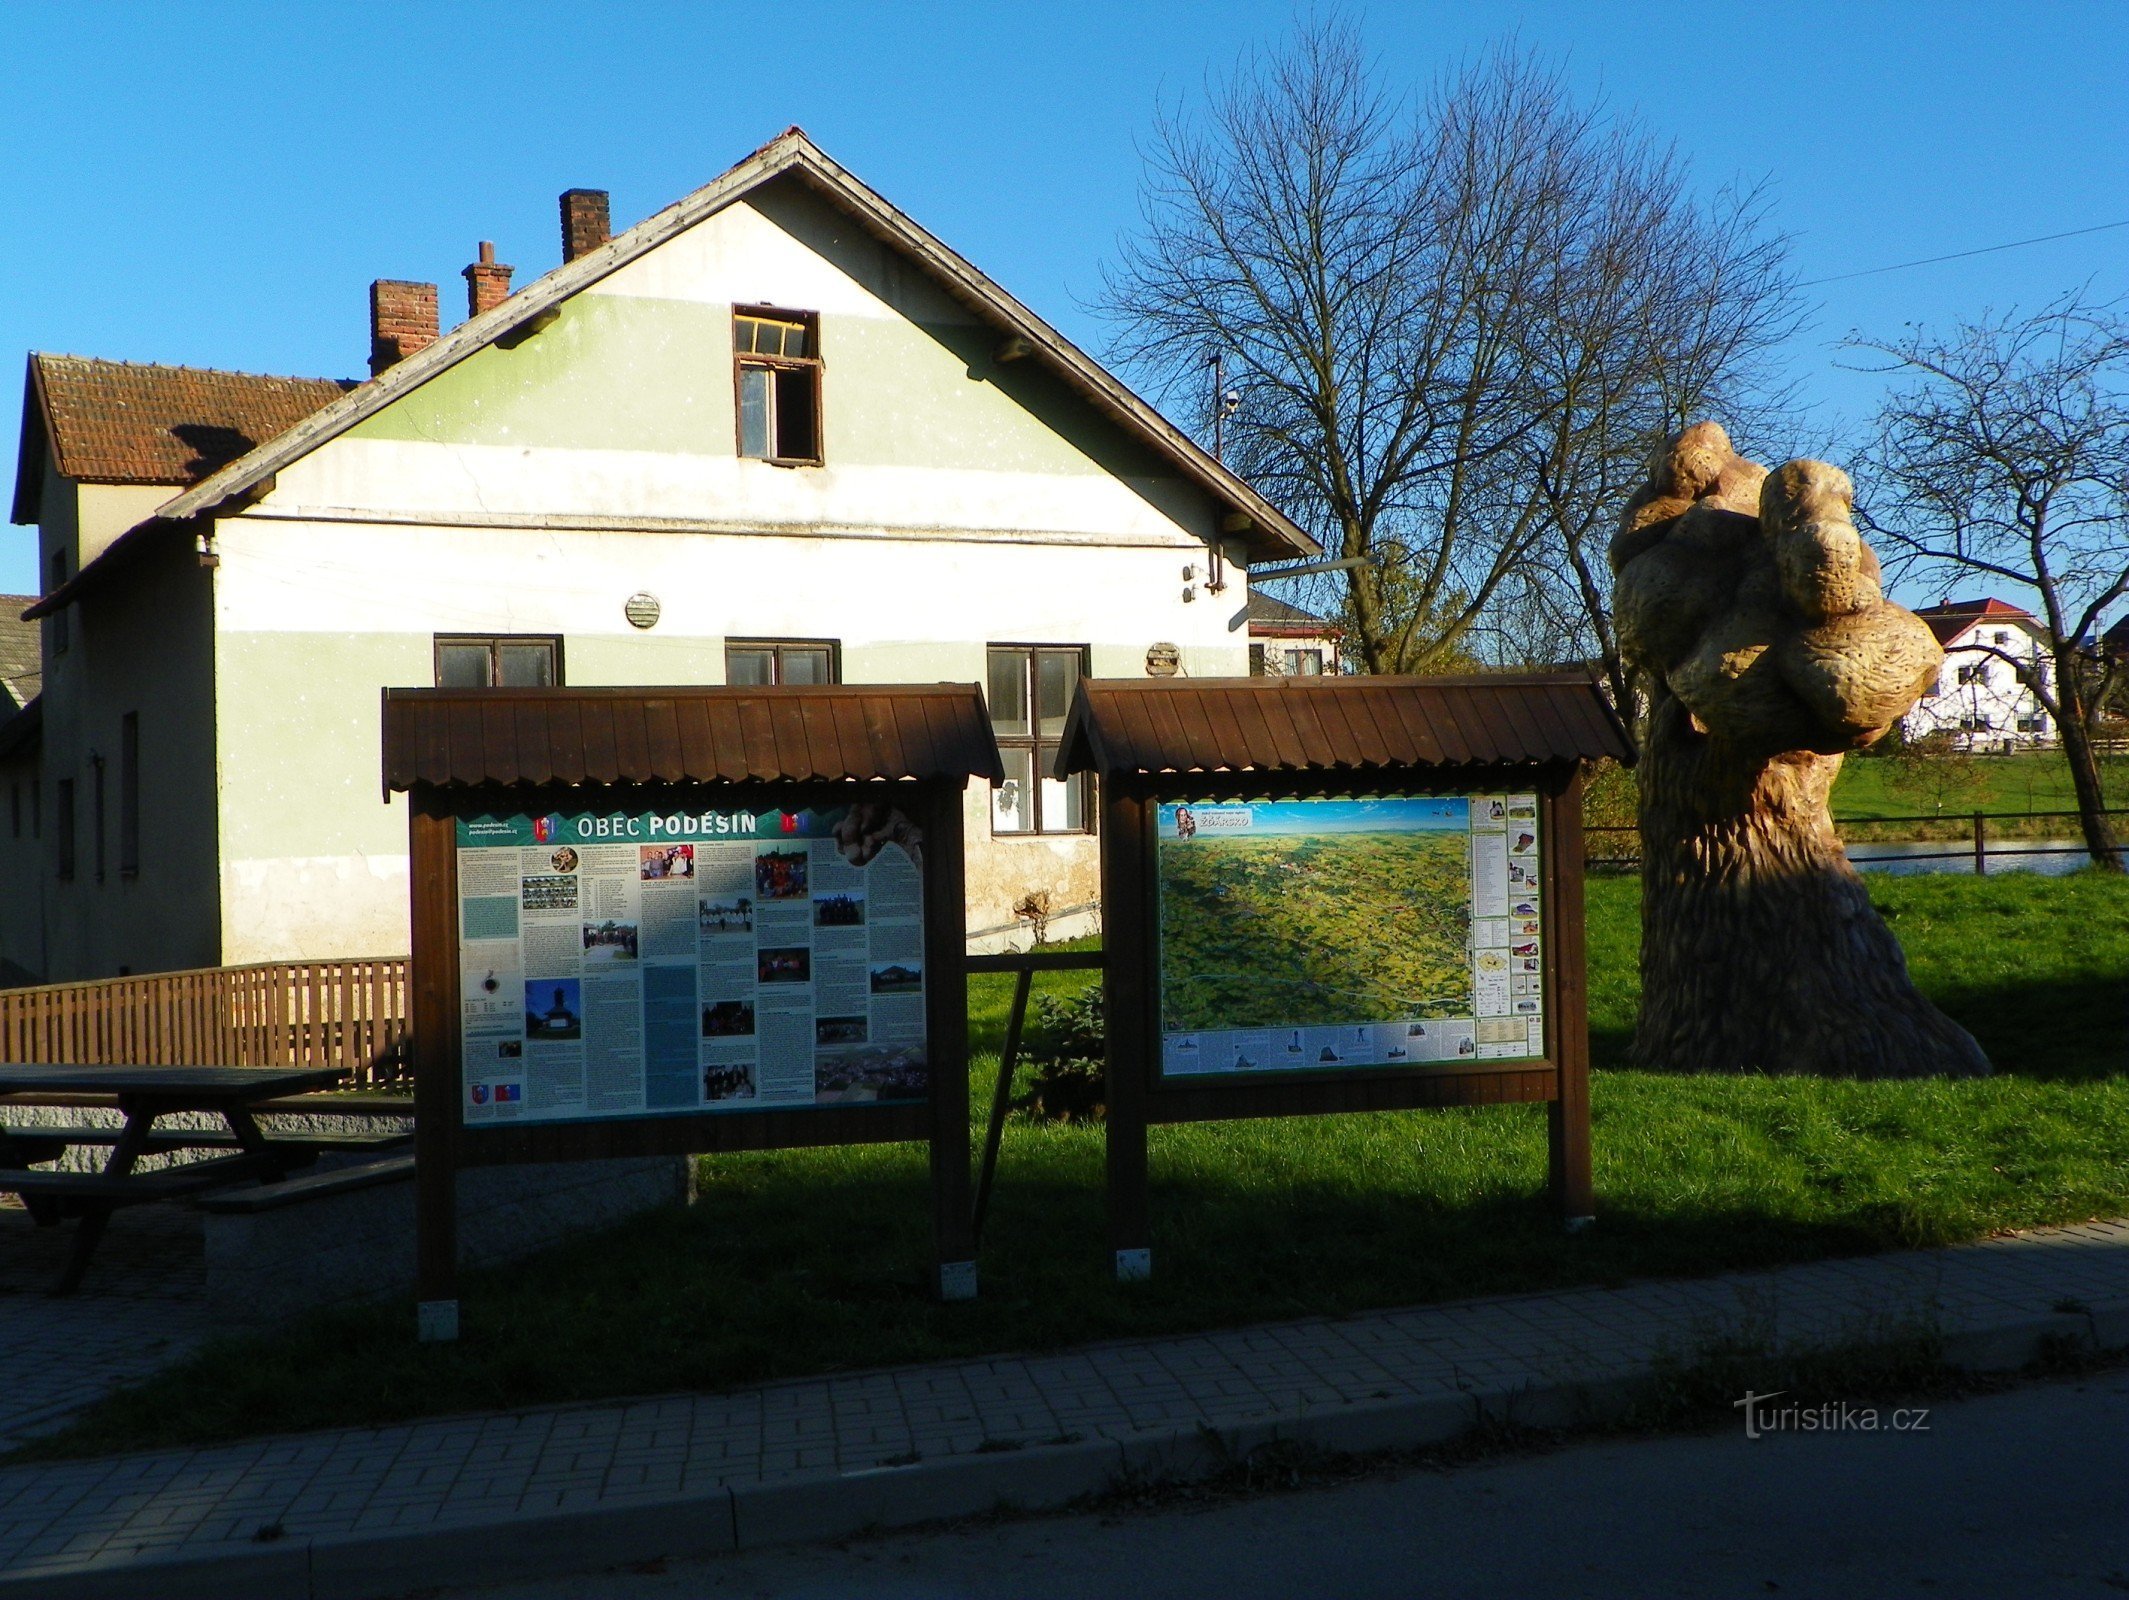 Information board by the concrete tree in Poděšín